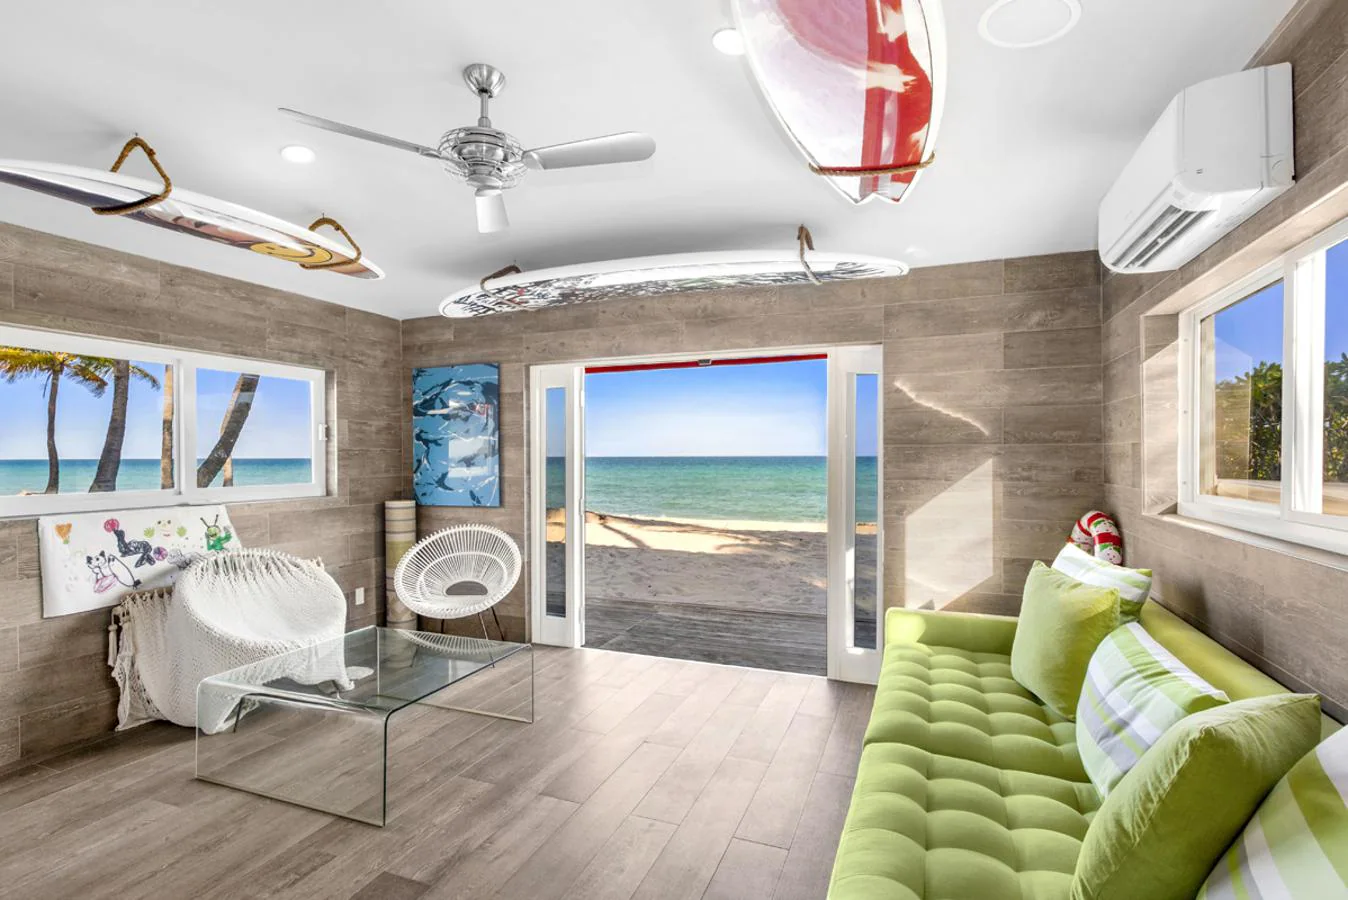 Playa privada. La vivienda incluye 10 metros de playa privada. Comunica con ella una sala con decoración tropical con motivos surferos, la playa es un rincón paradisíaco de arena blanca y agua turquesa